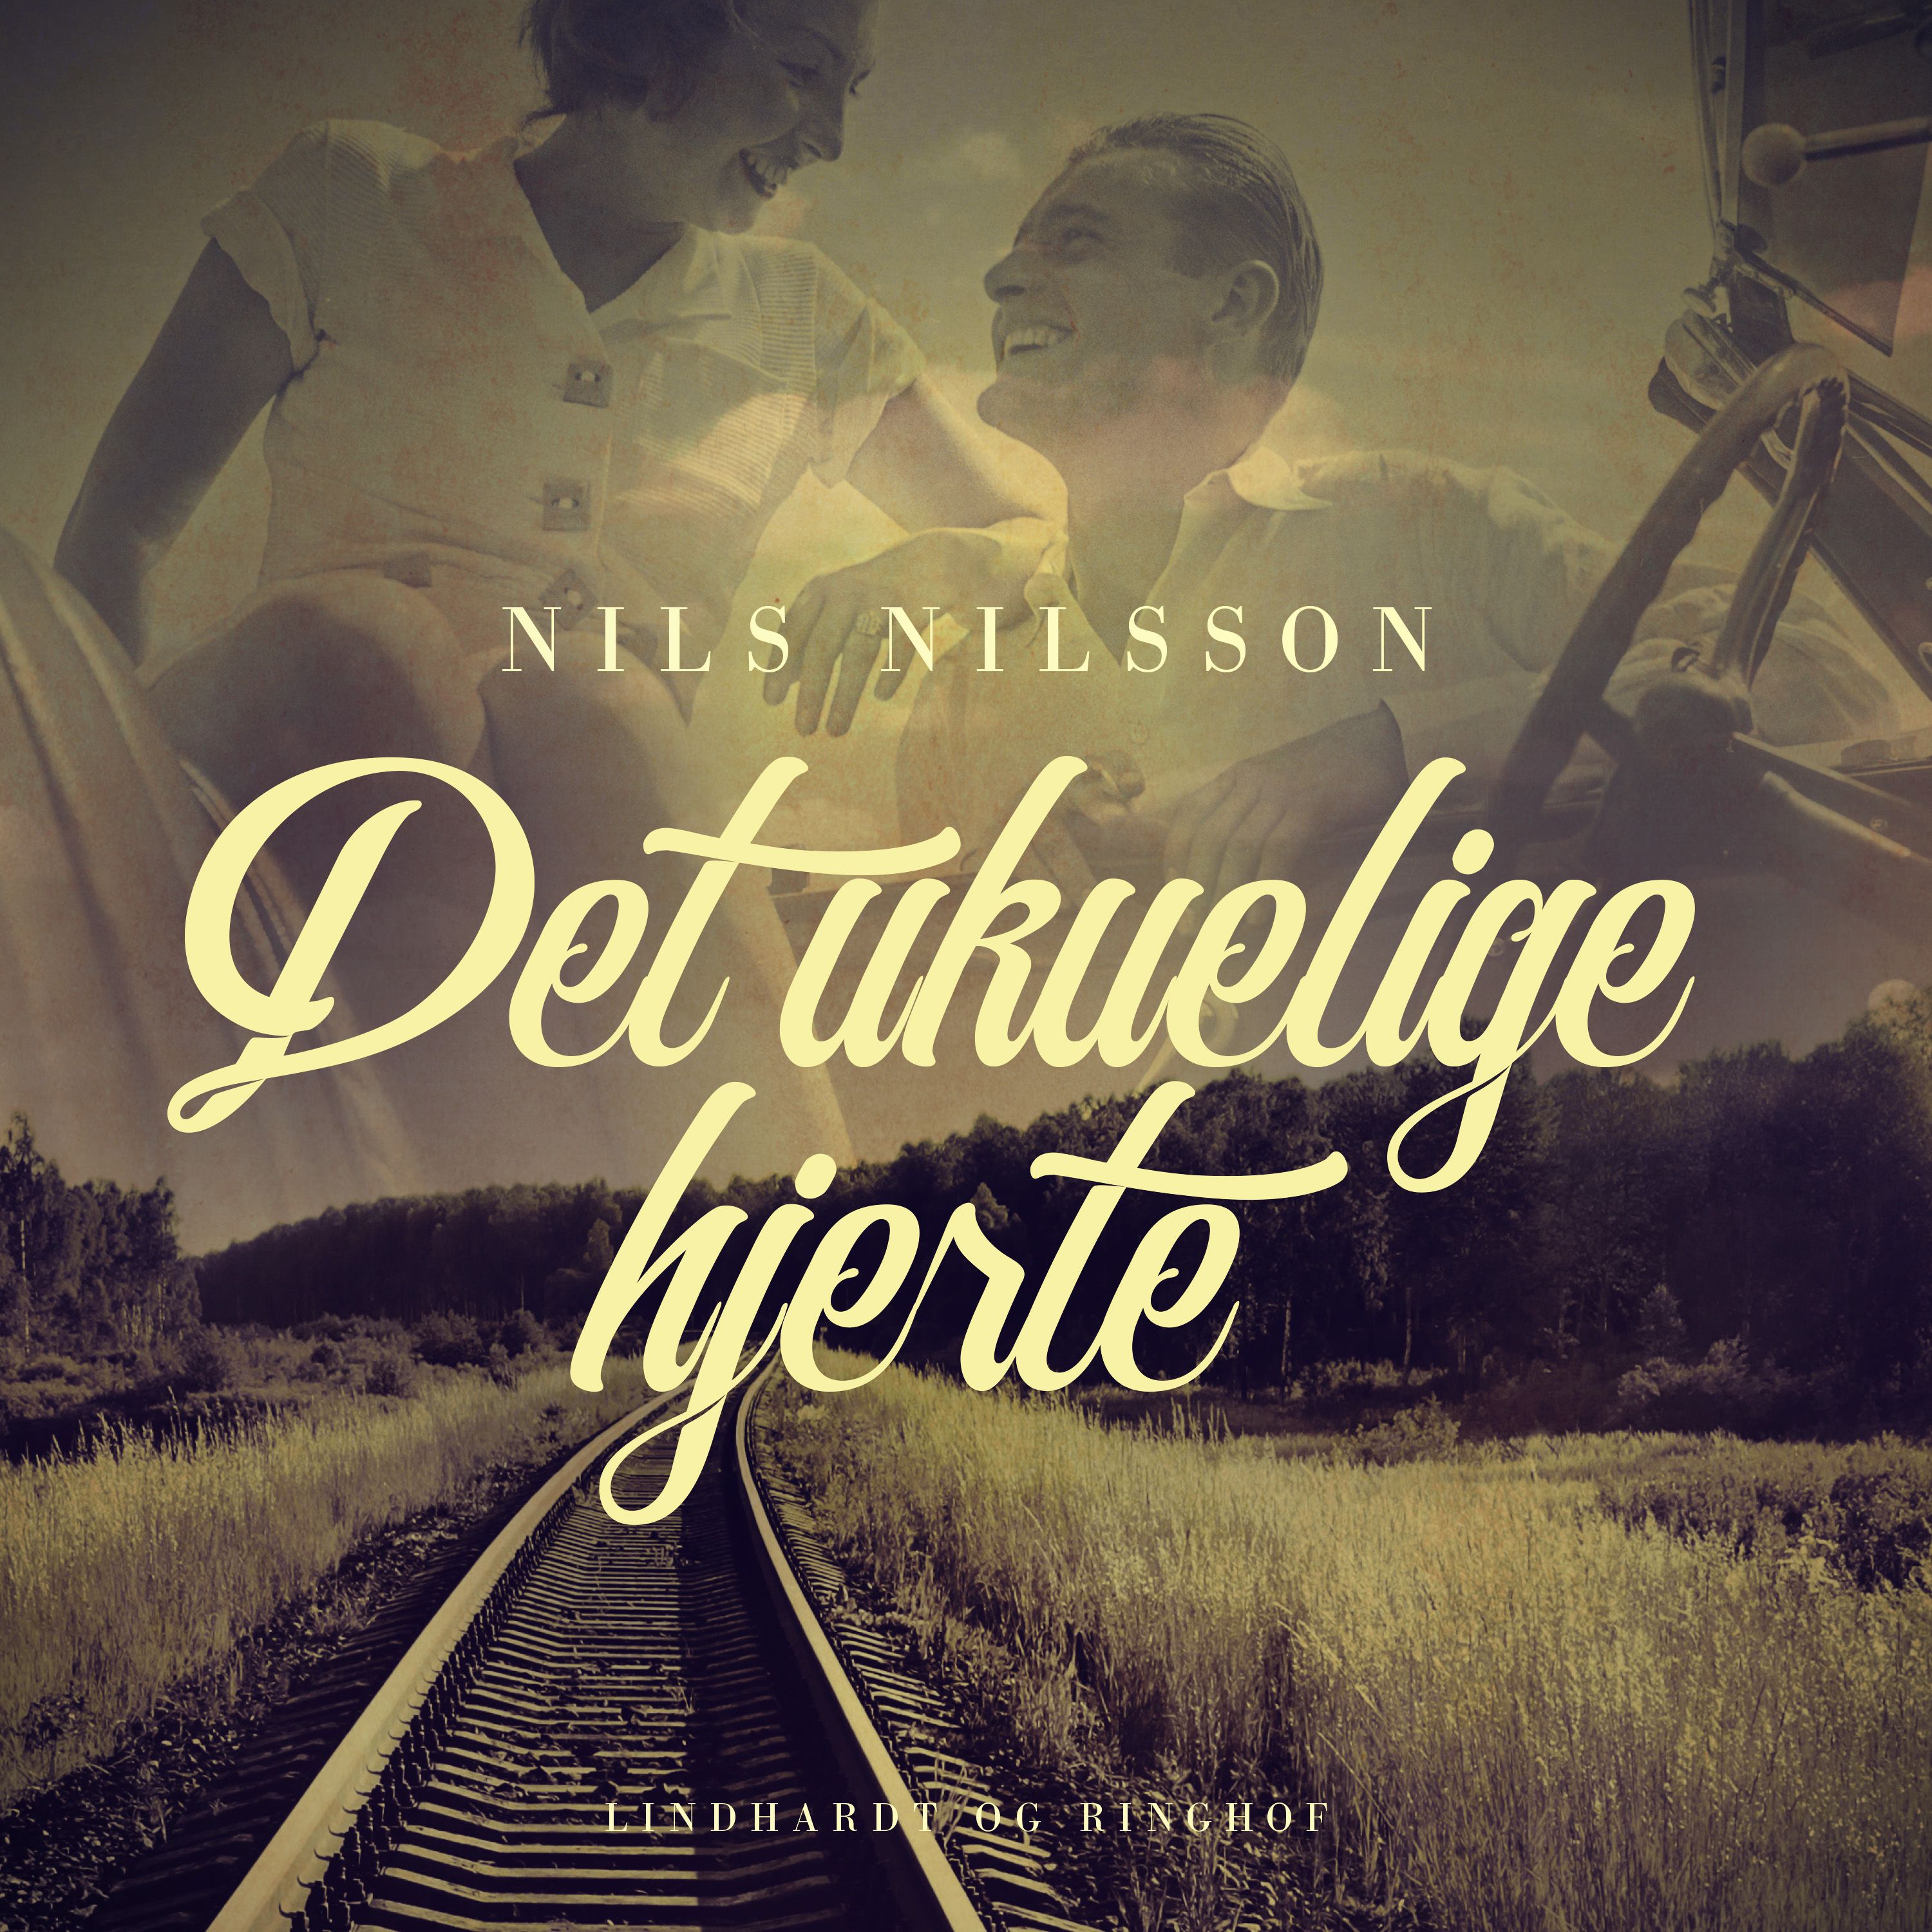 Det ukuelige hjerte, ljudbok av Nils Nilsson